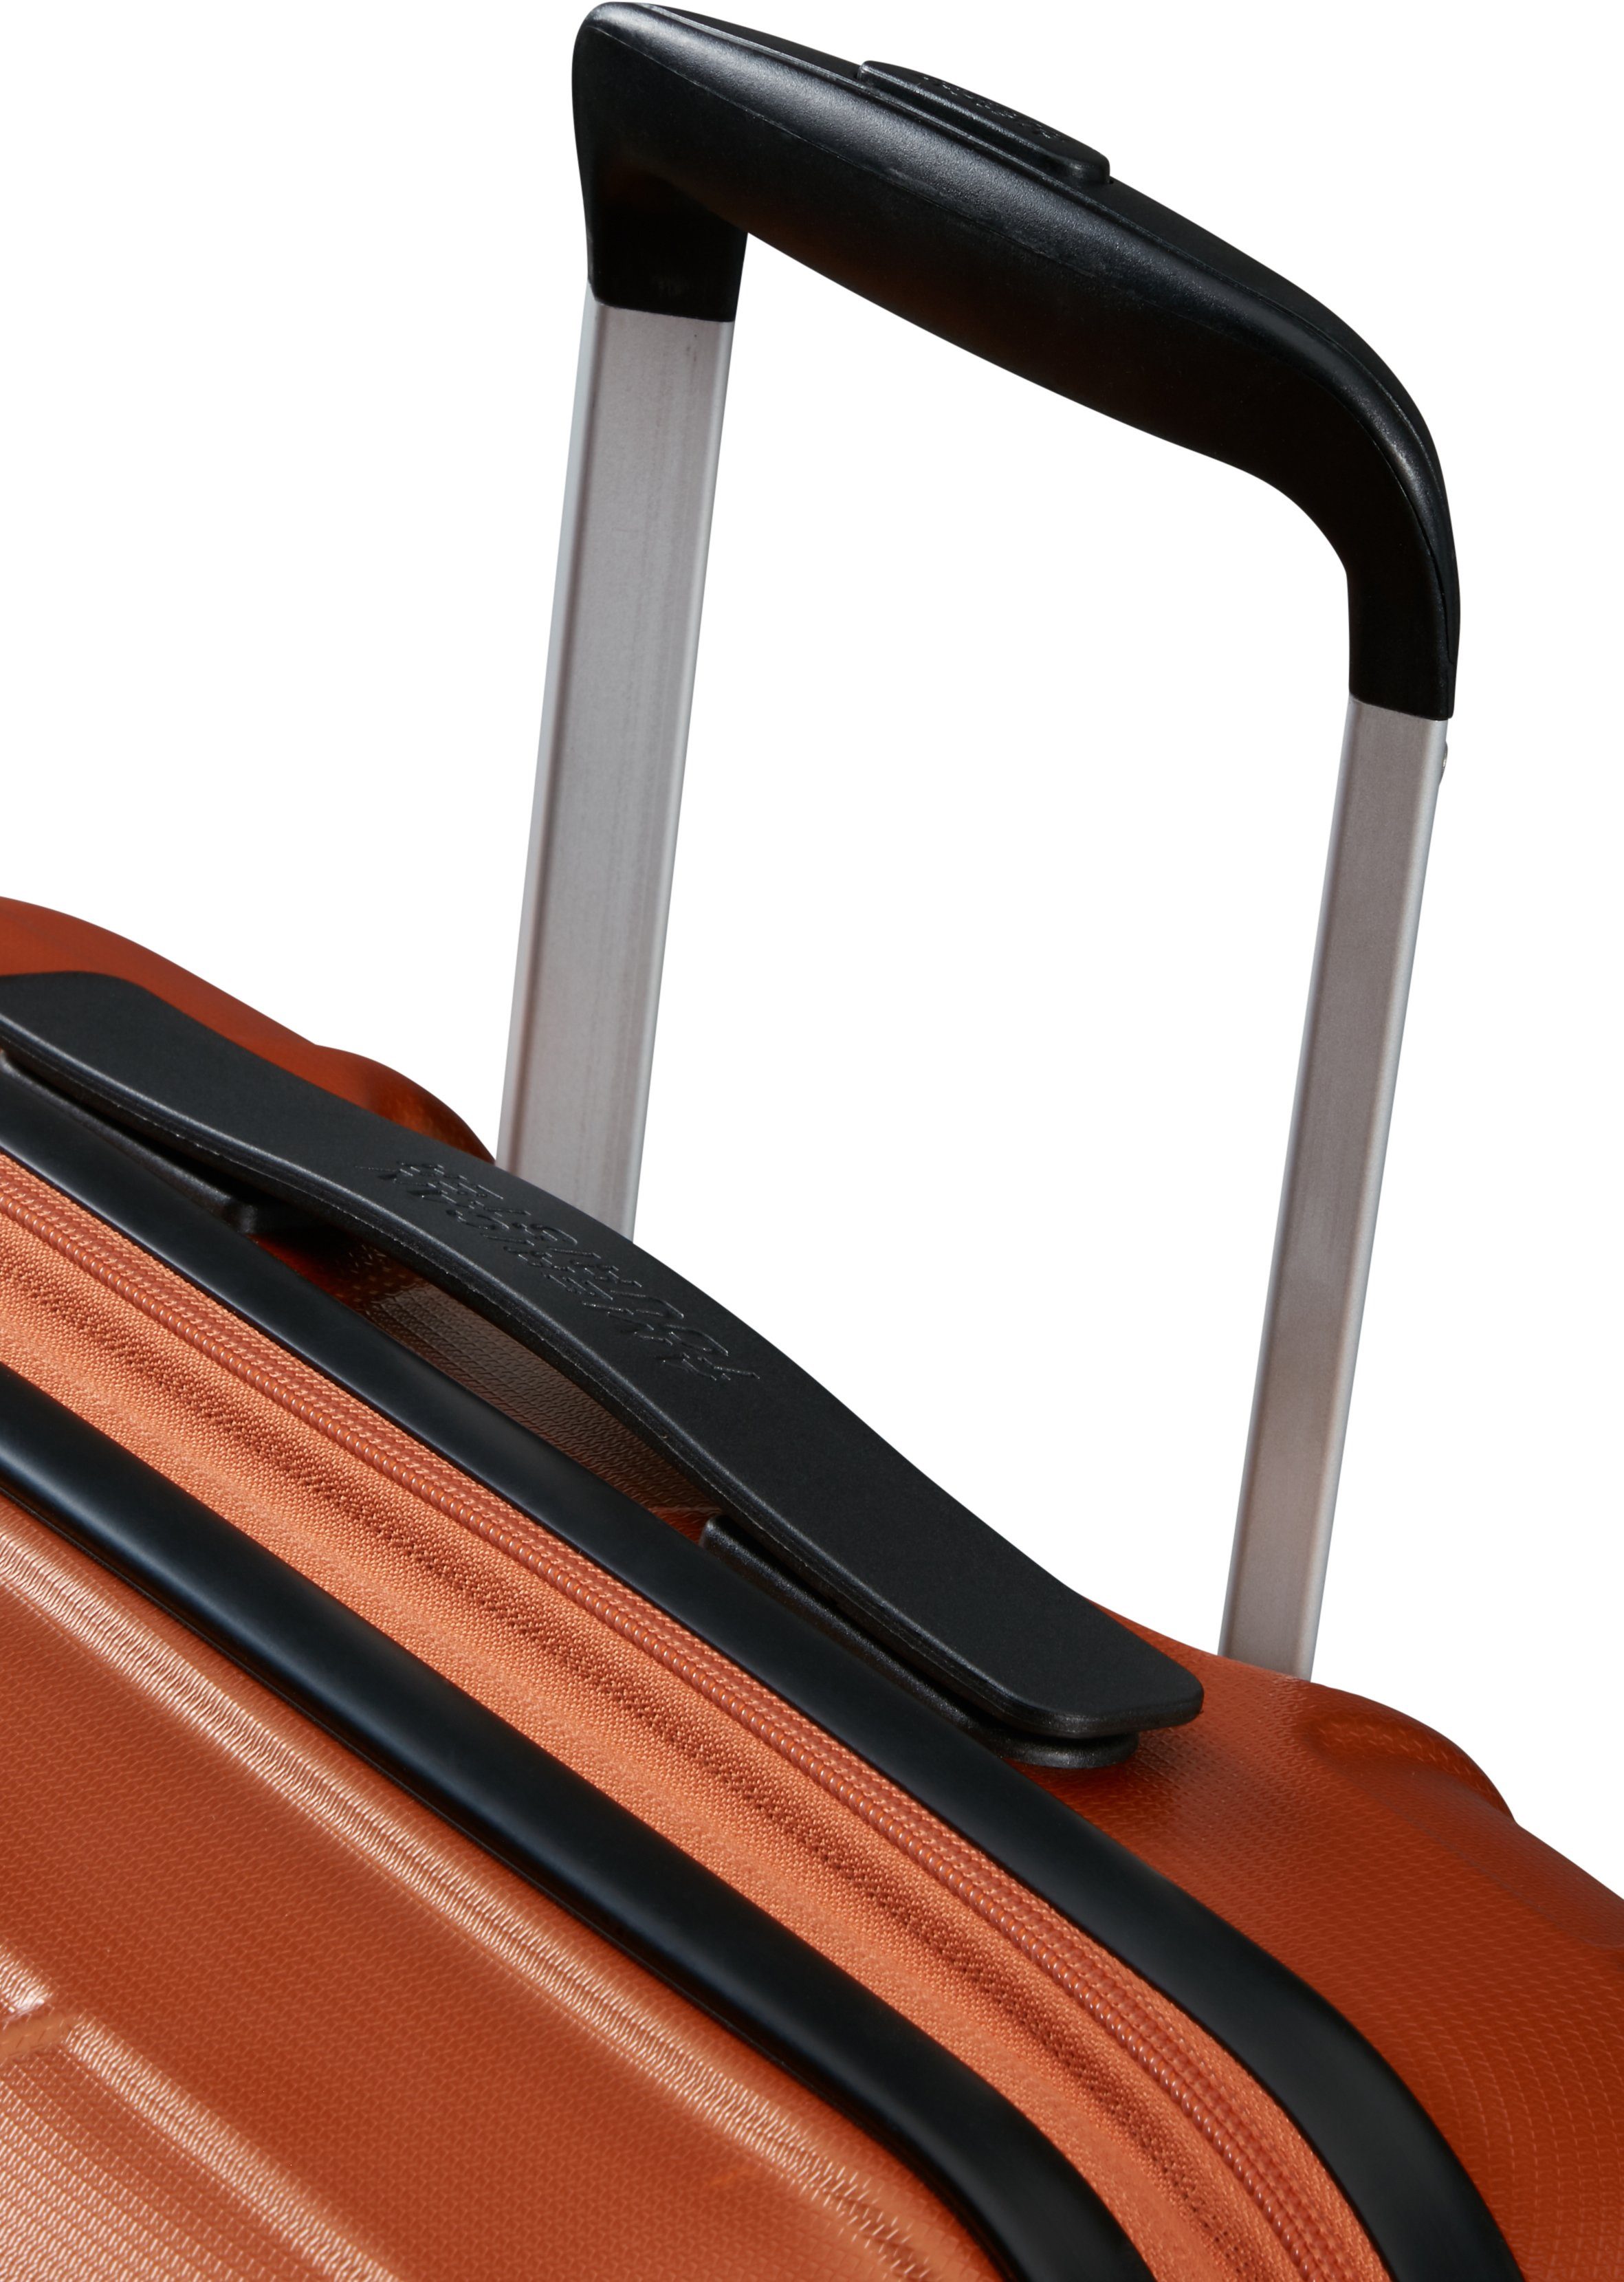 Rollen, 4 67 Hartschalen-Trolley Copper mit American Volumenerweiterung Orange Tourister® Speedstar, cm,